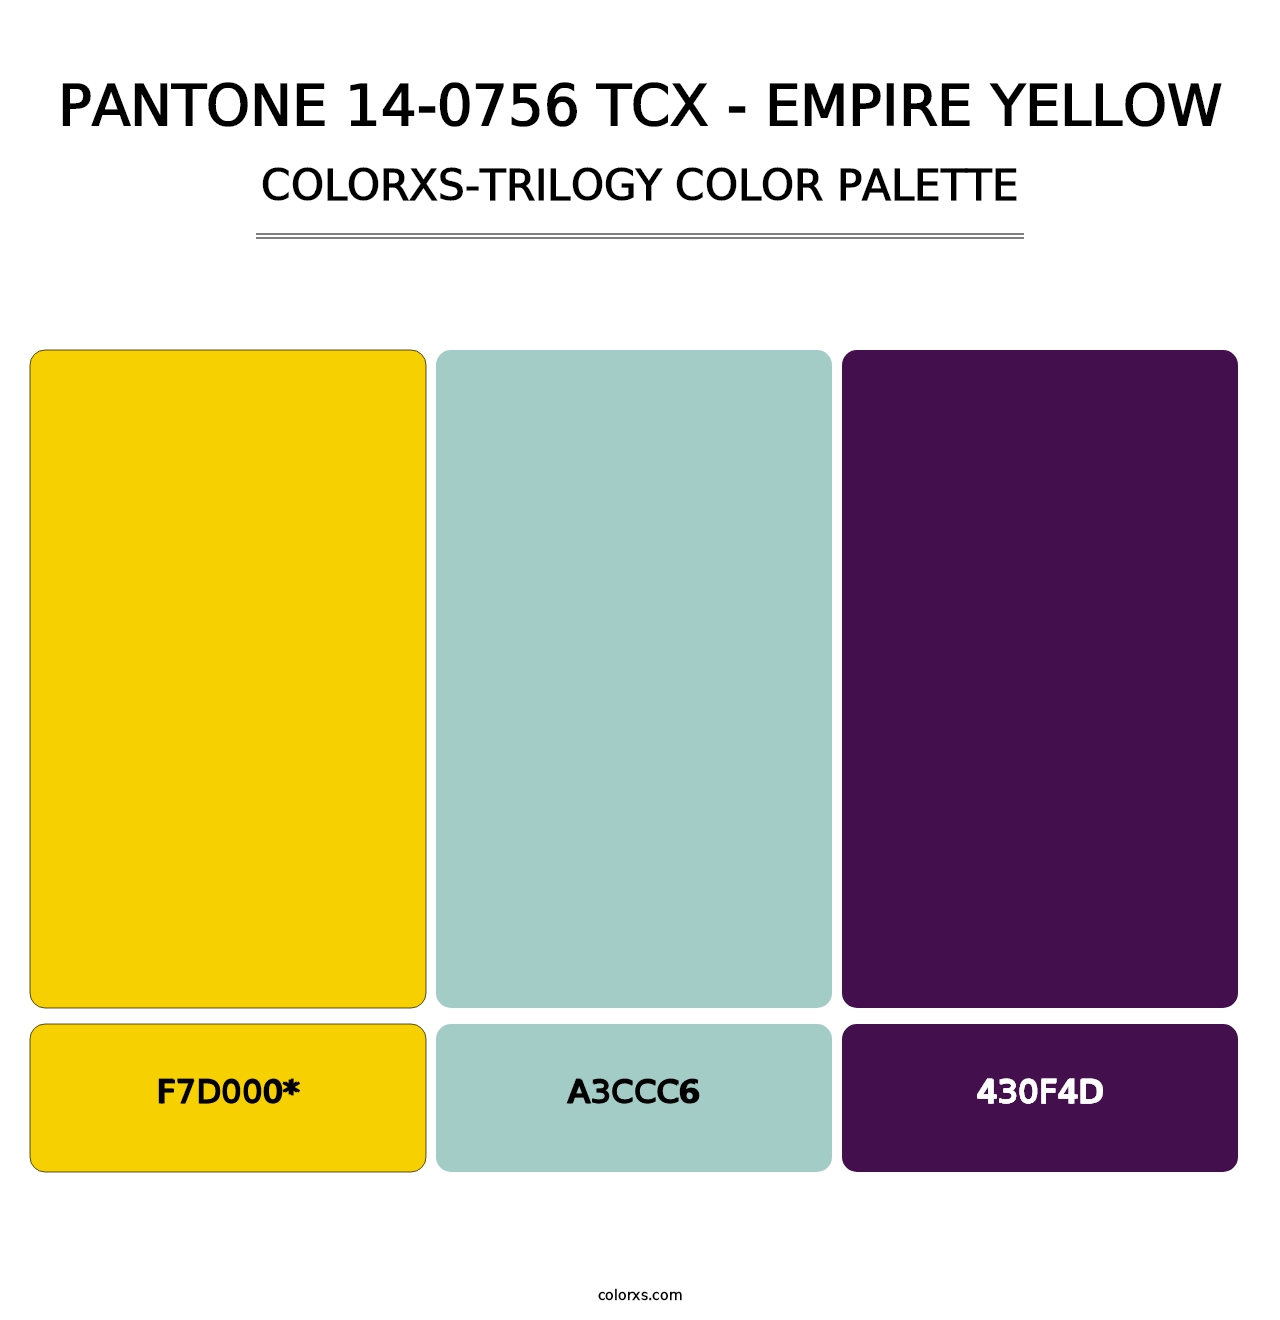 PANTONE 14-0756 TCX - Empire Yellow - Colorxs Trilogy Palette